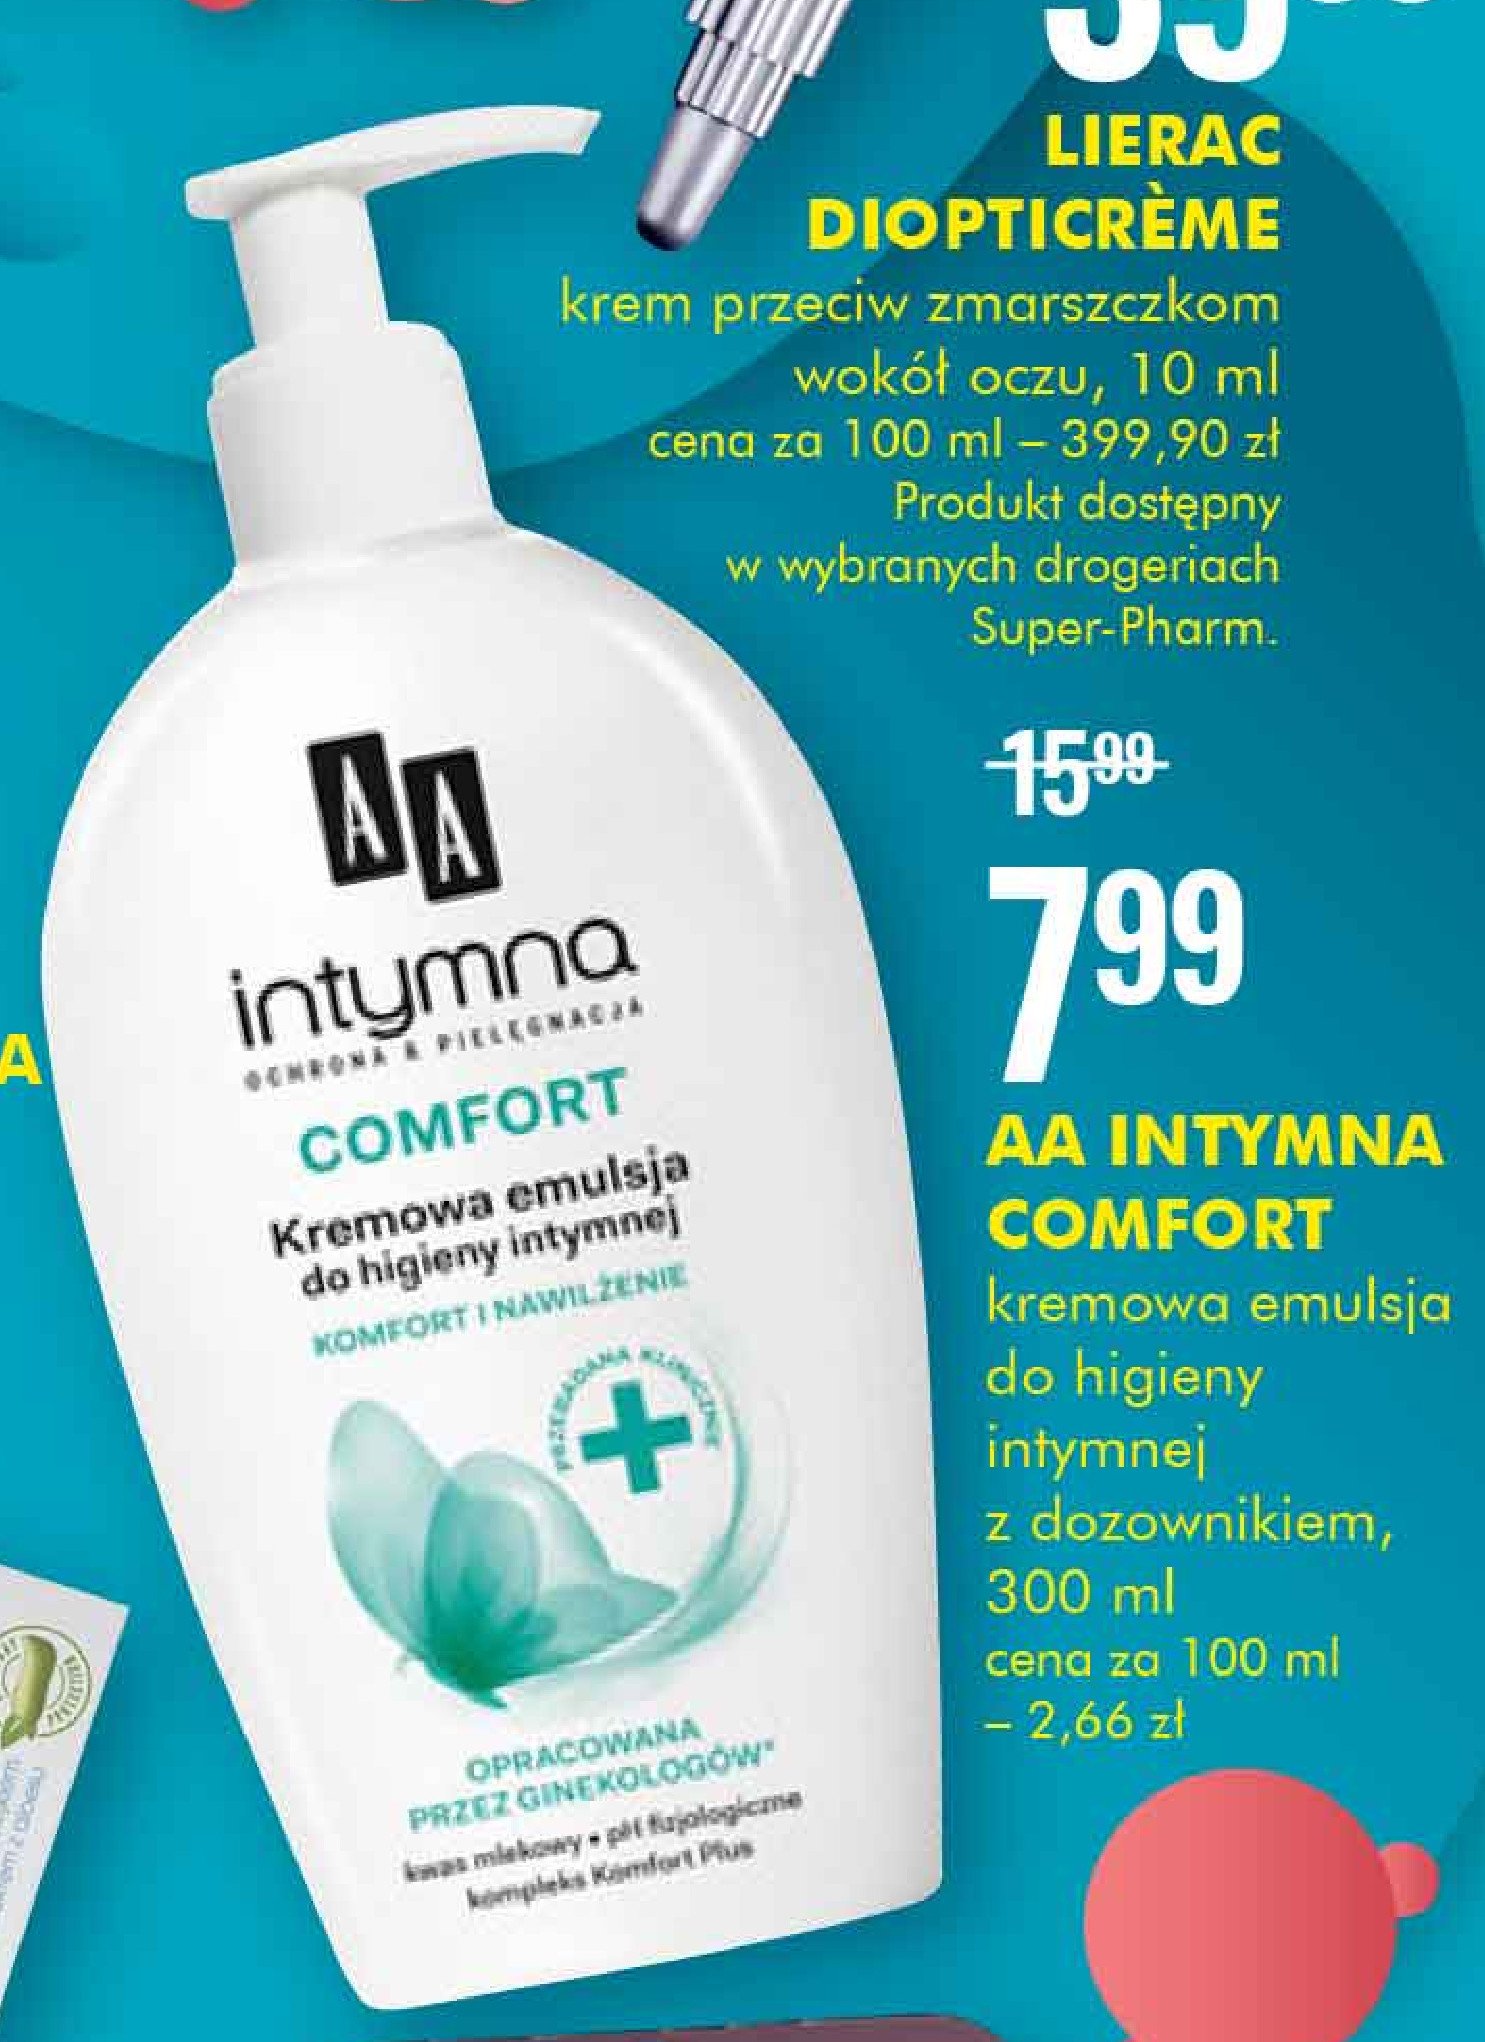 Comfort, kremowa emulsja do higieny intymnej komfort i nawilżenie Aa intymna ochrona + pielęgnacja promocja